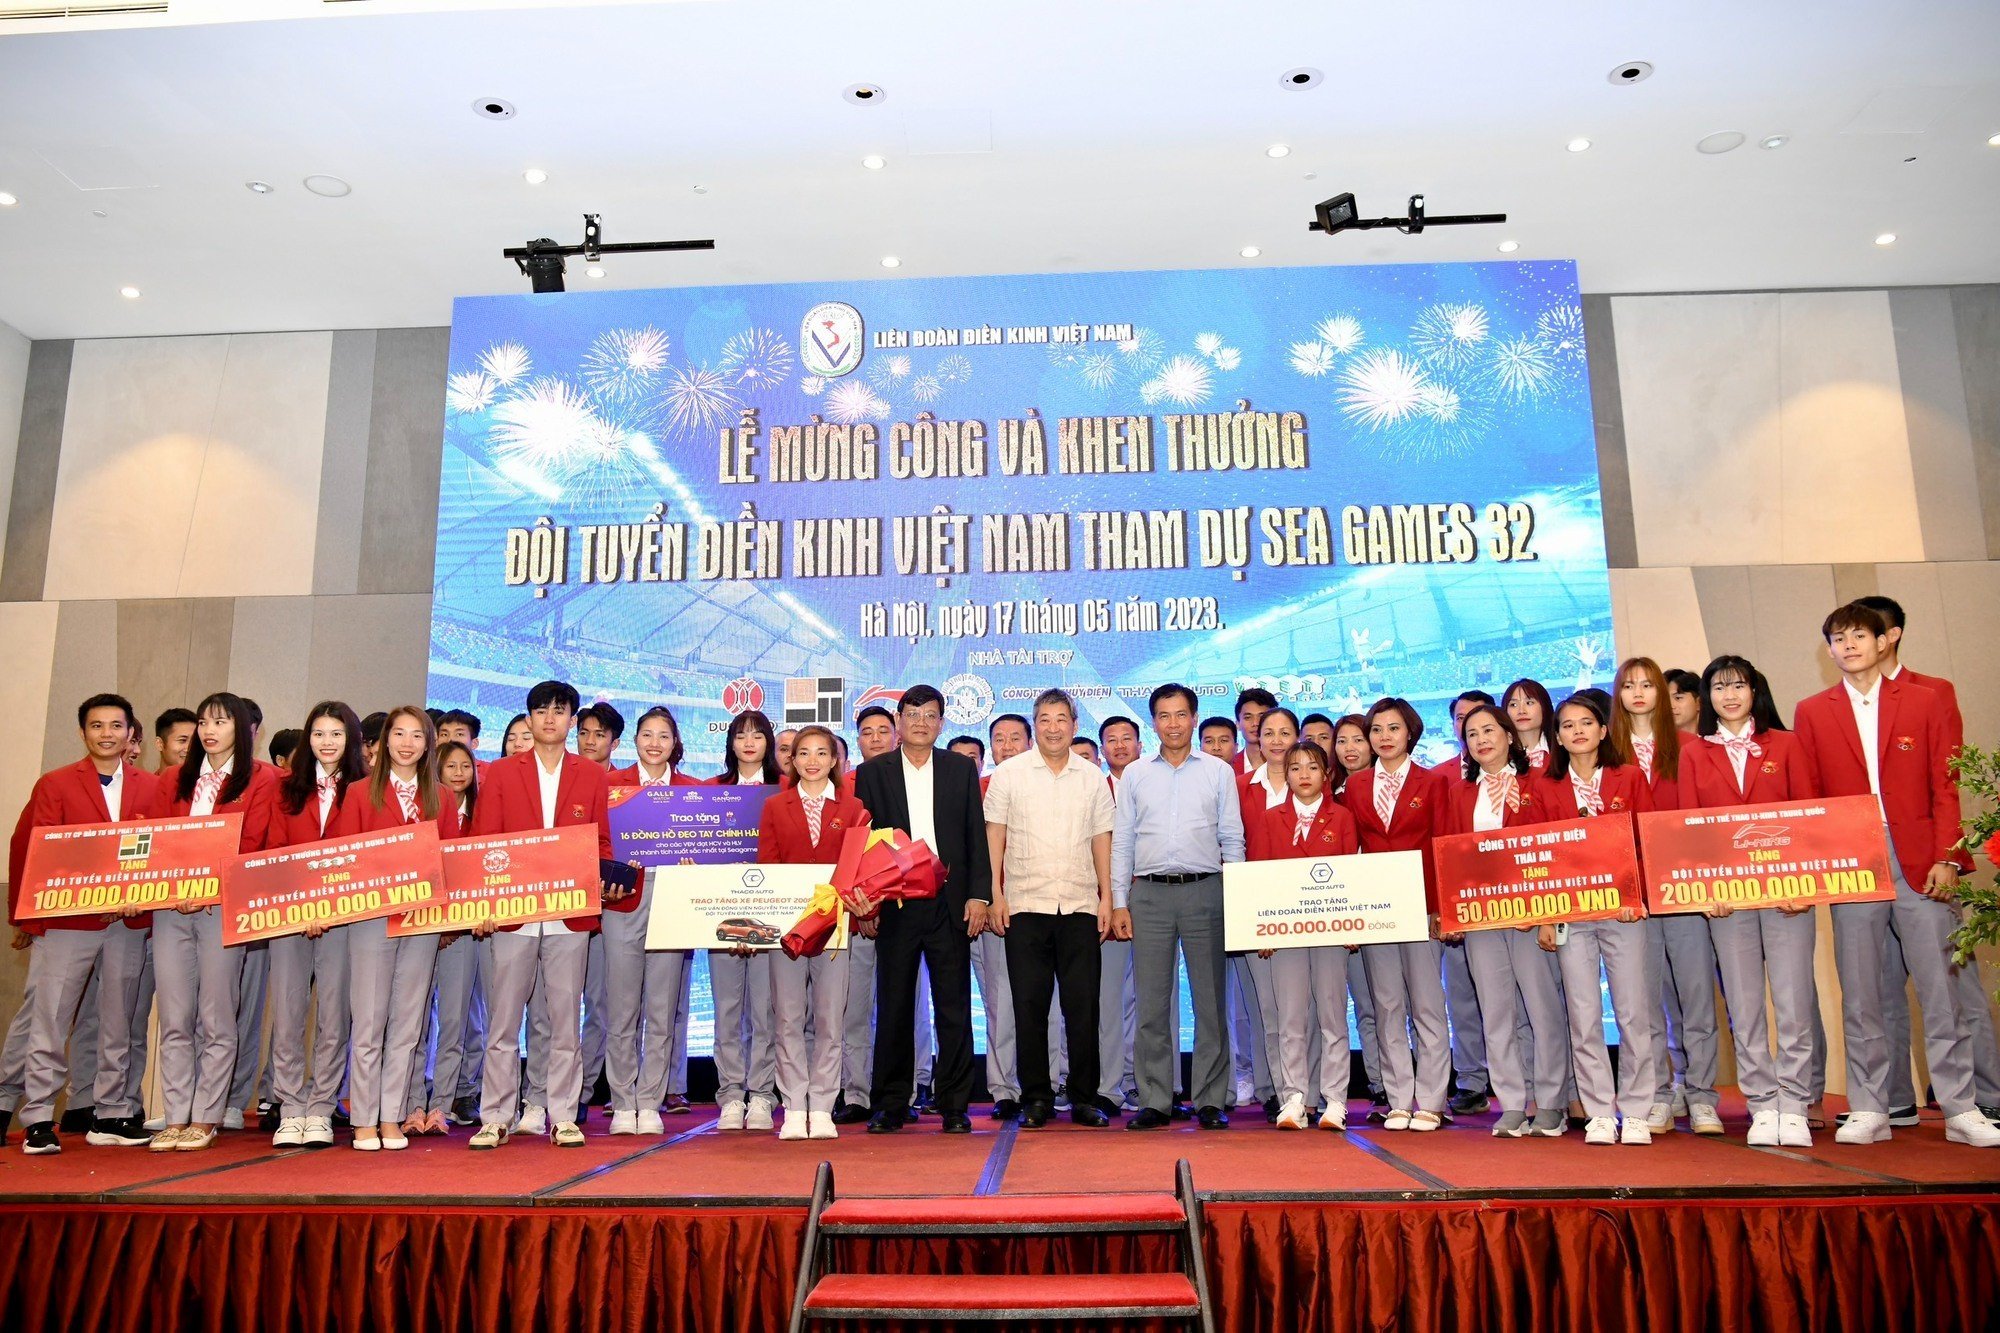 THACO AUTO trao tặng 200 triệu đồng cho Liên đoàn Điền kinh Việt Nam và chìa khóa xe tượng trưng cho VĐV Nguyễn Thị Oanh